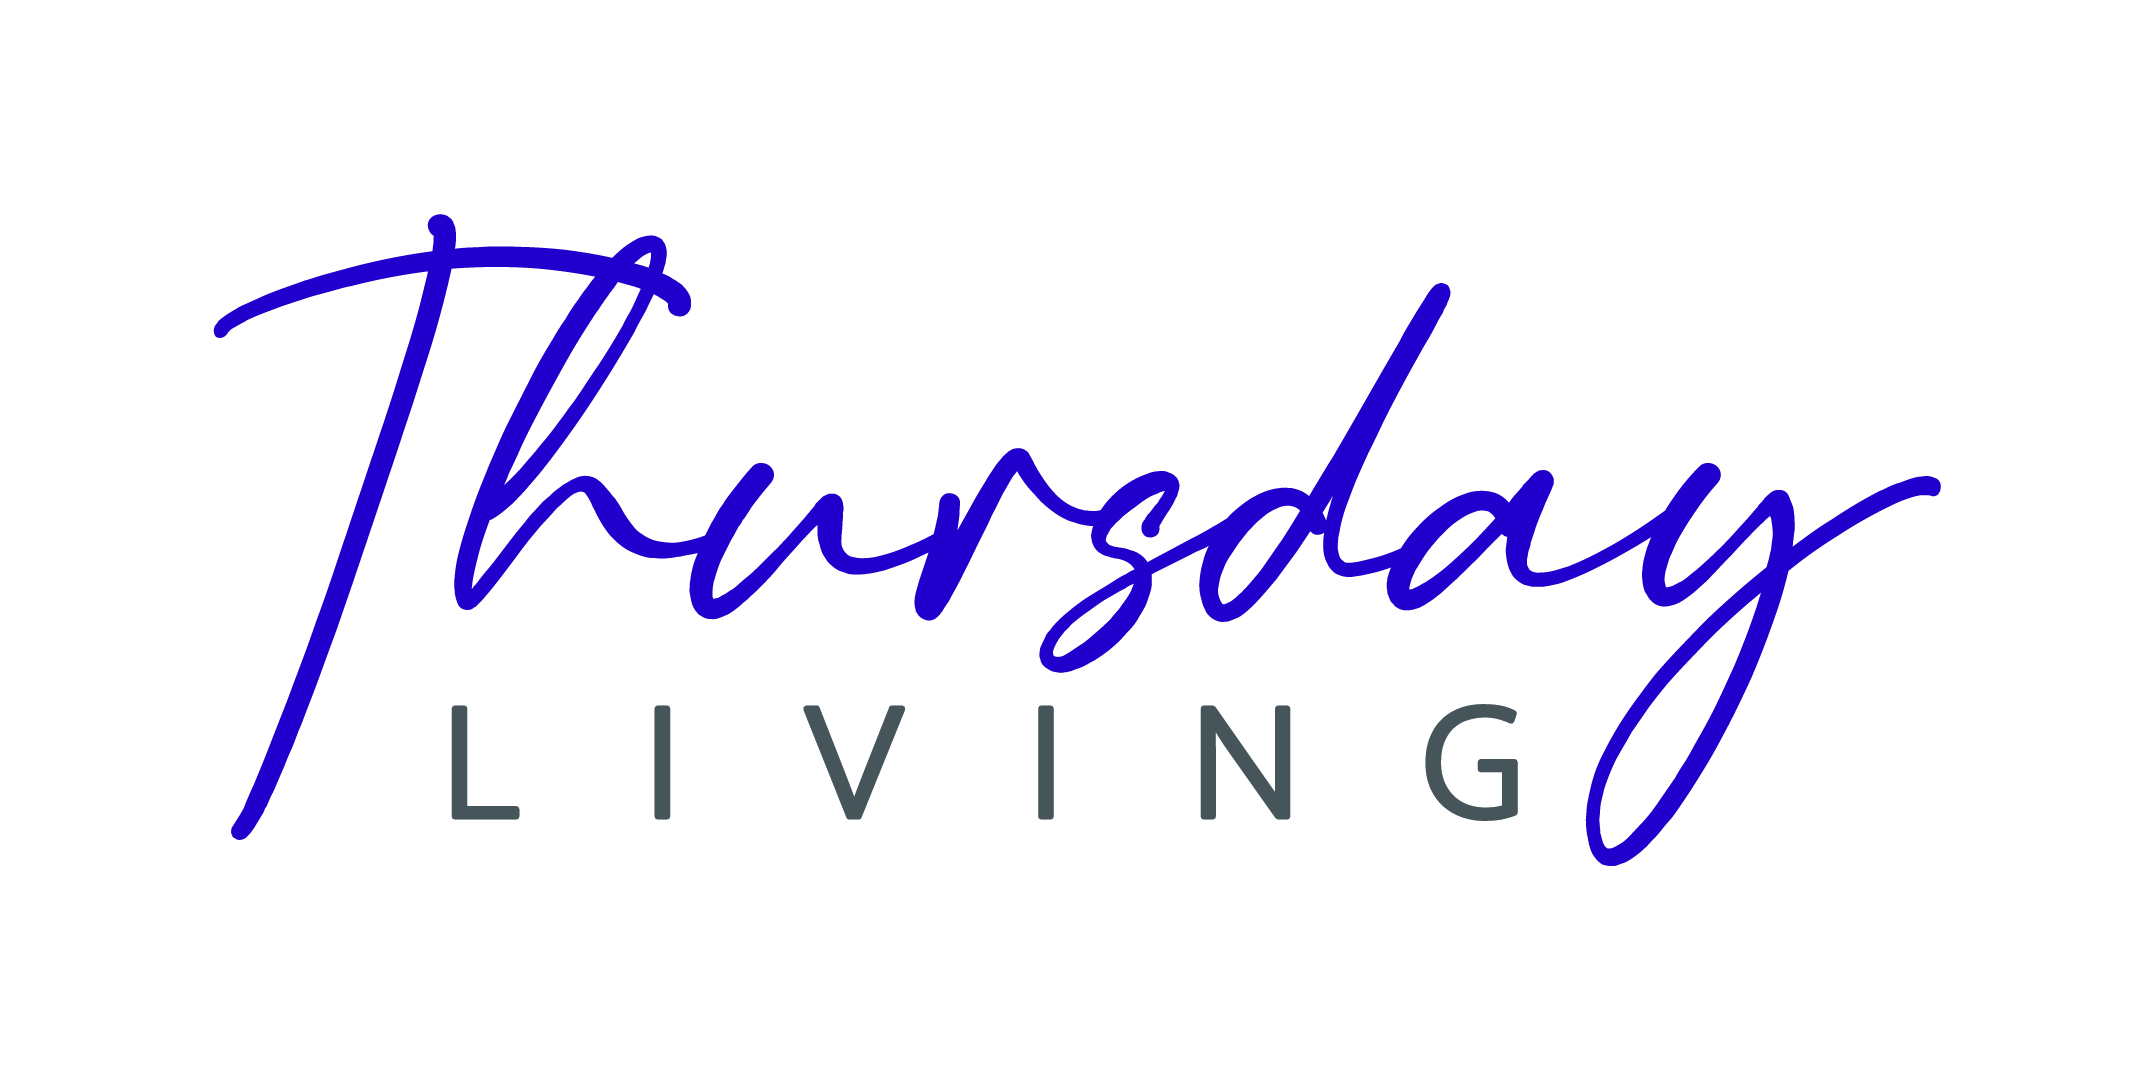 Thursday Living Logo